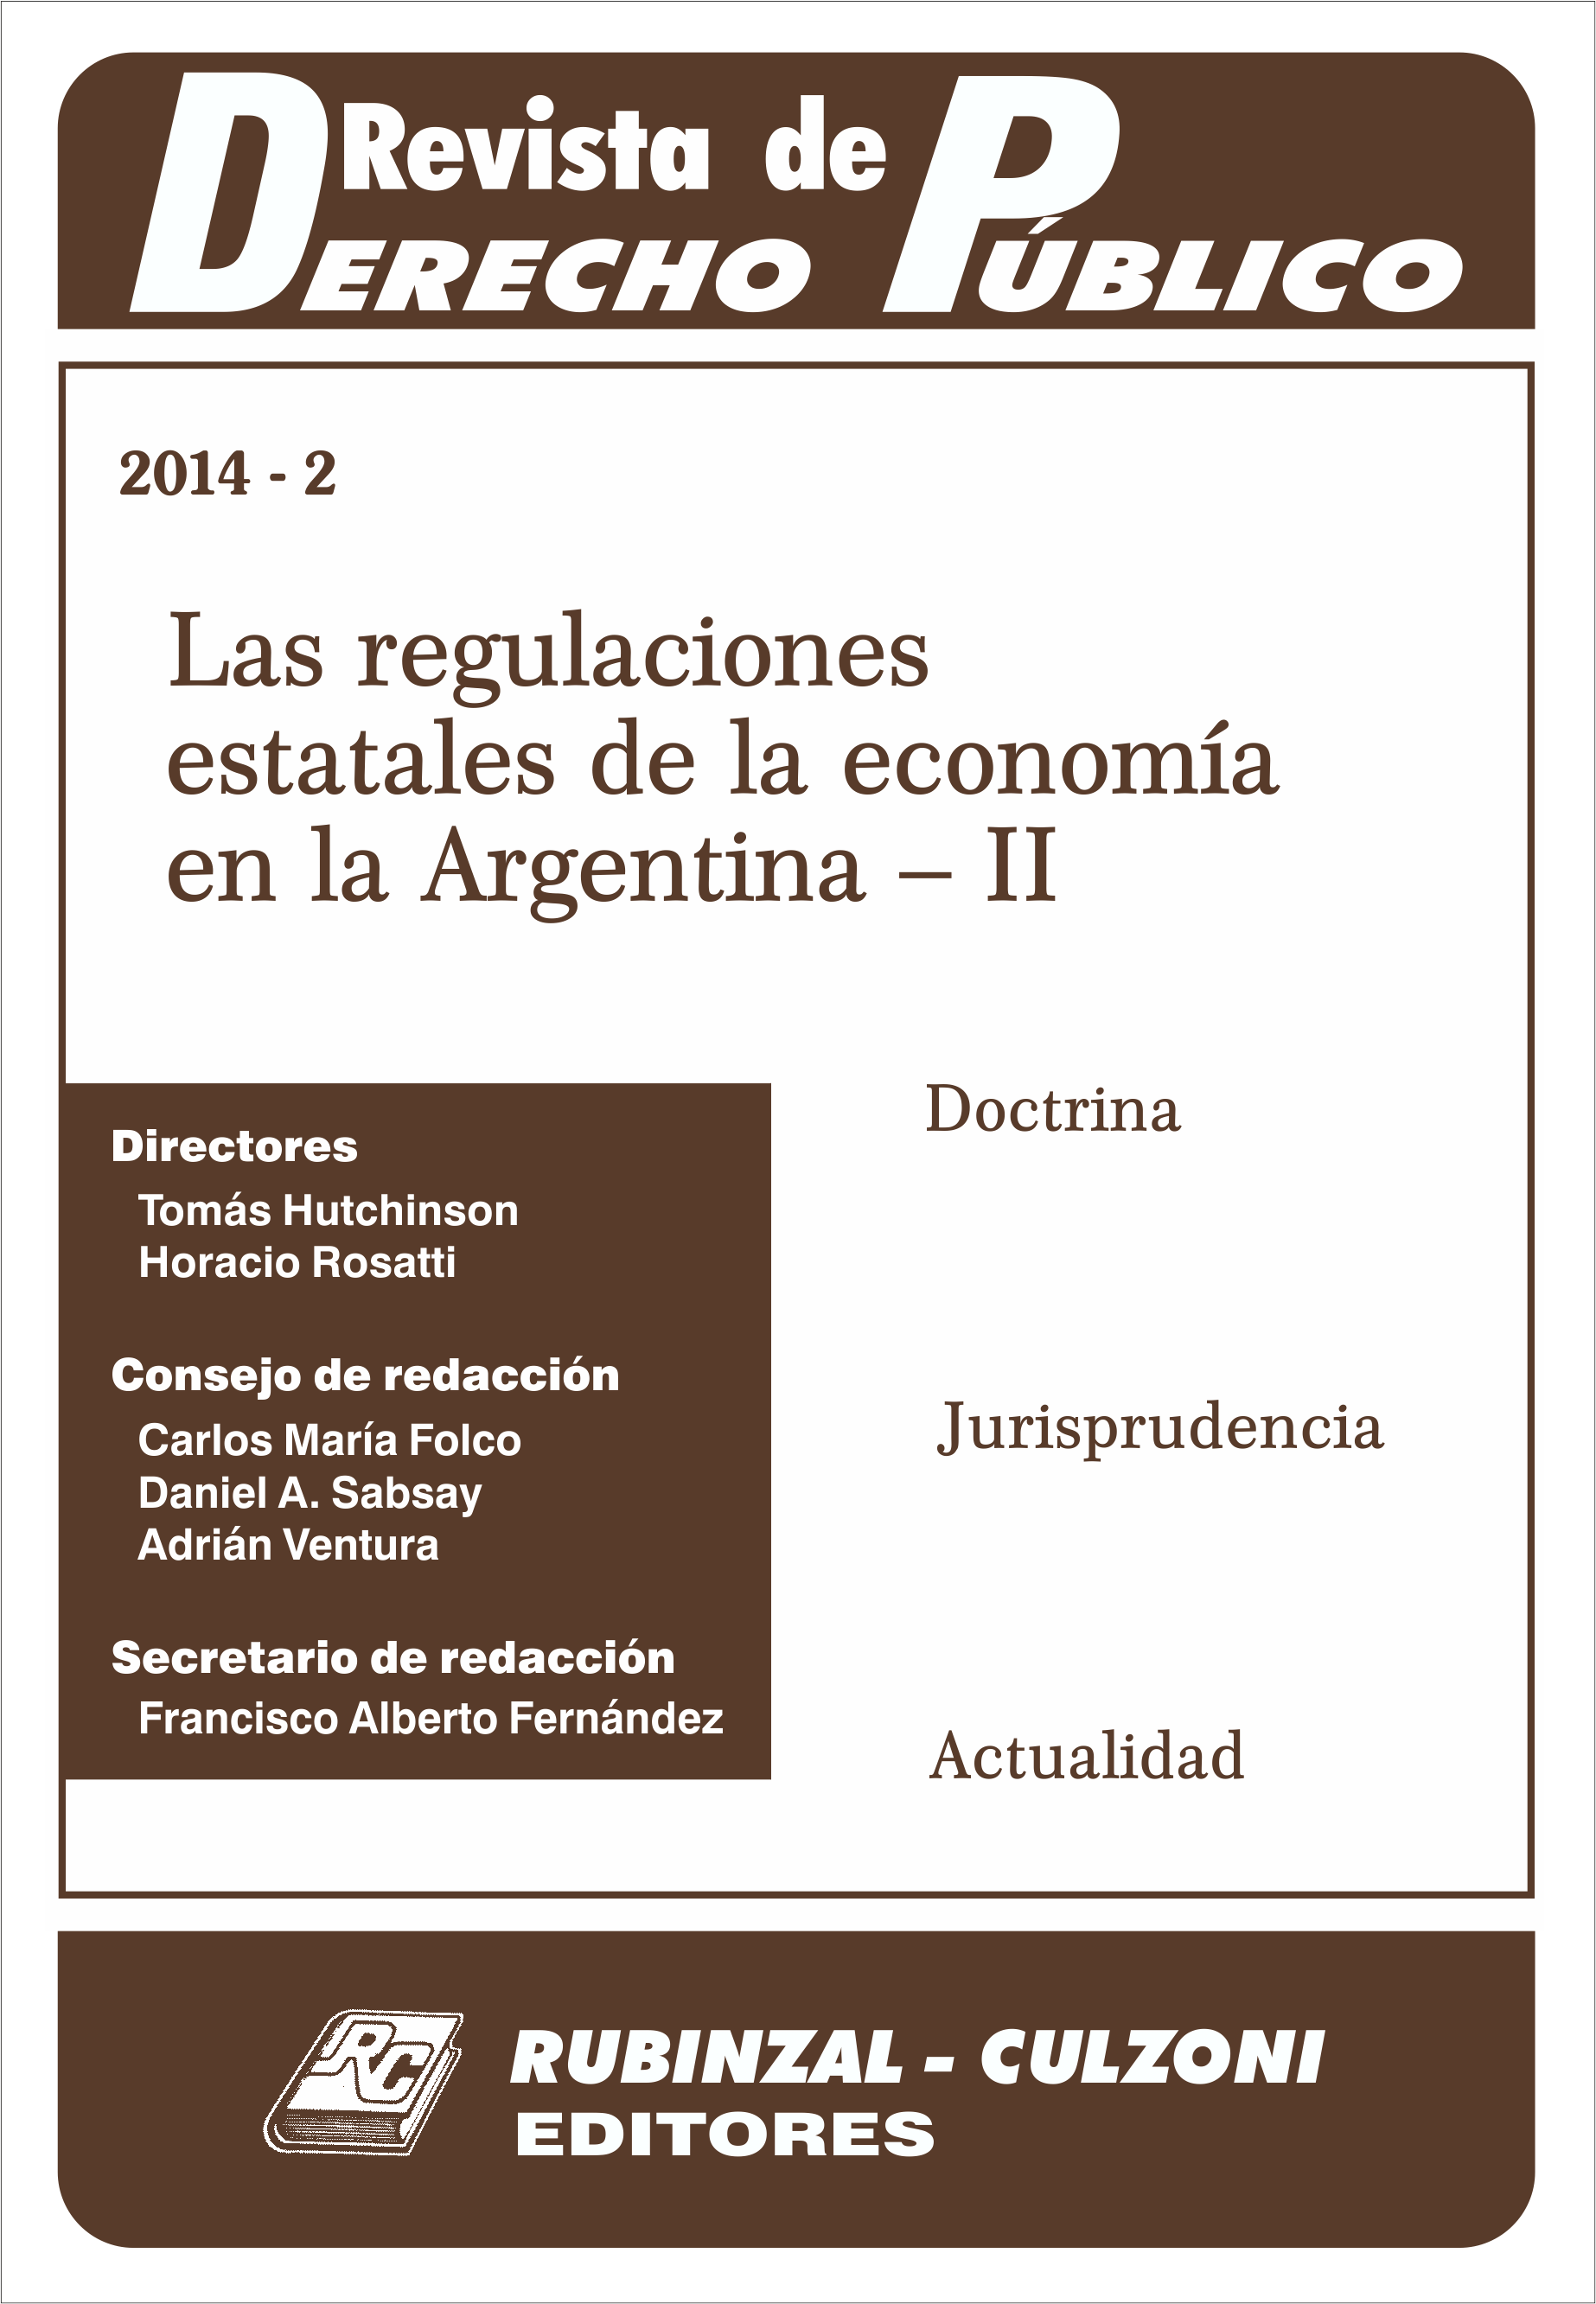 Las regulaciones estatales de la economía en la Argentina - II. [2014-2]